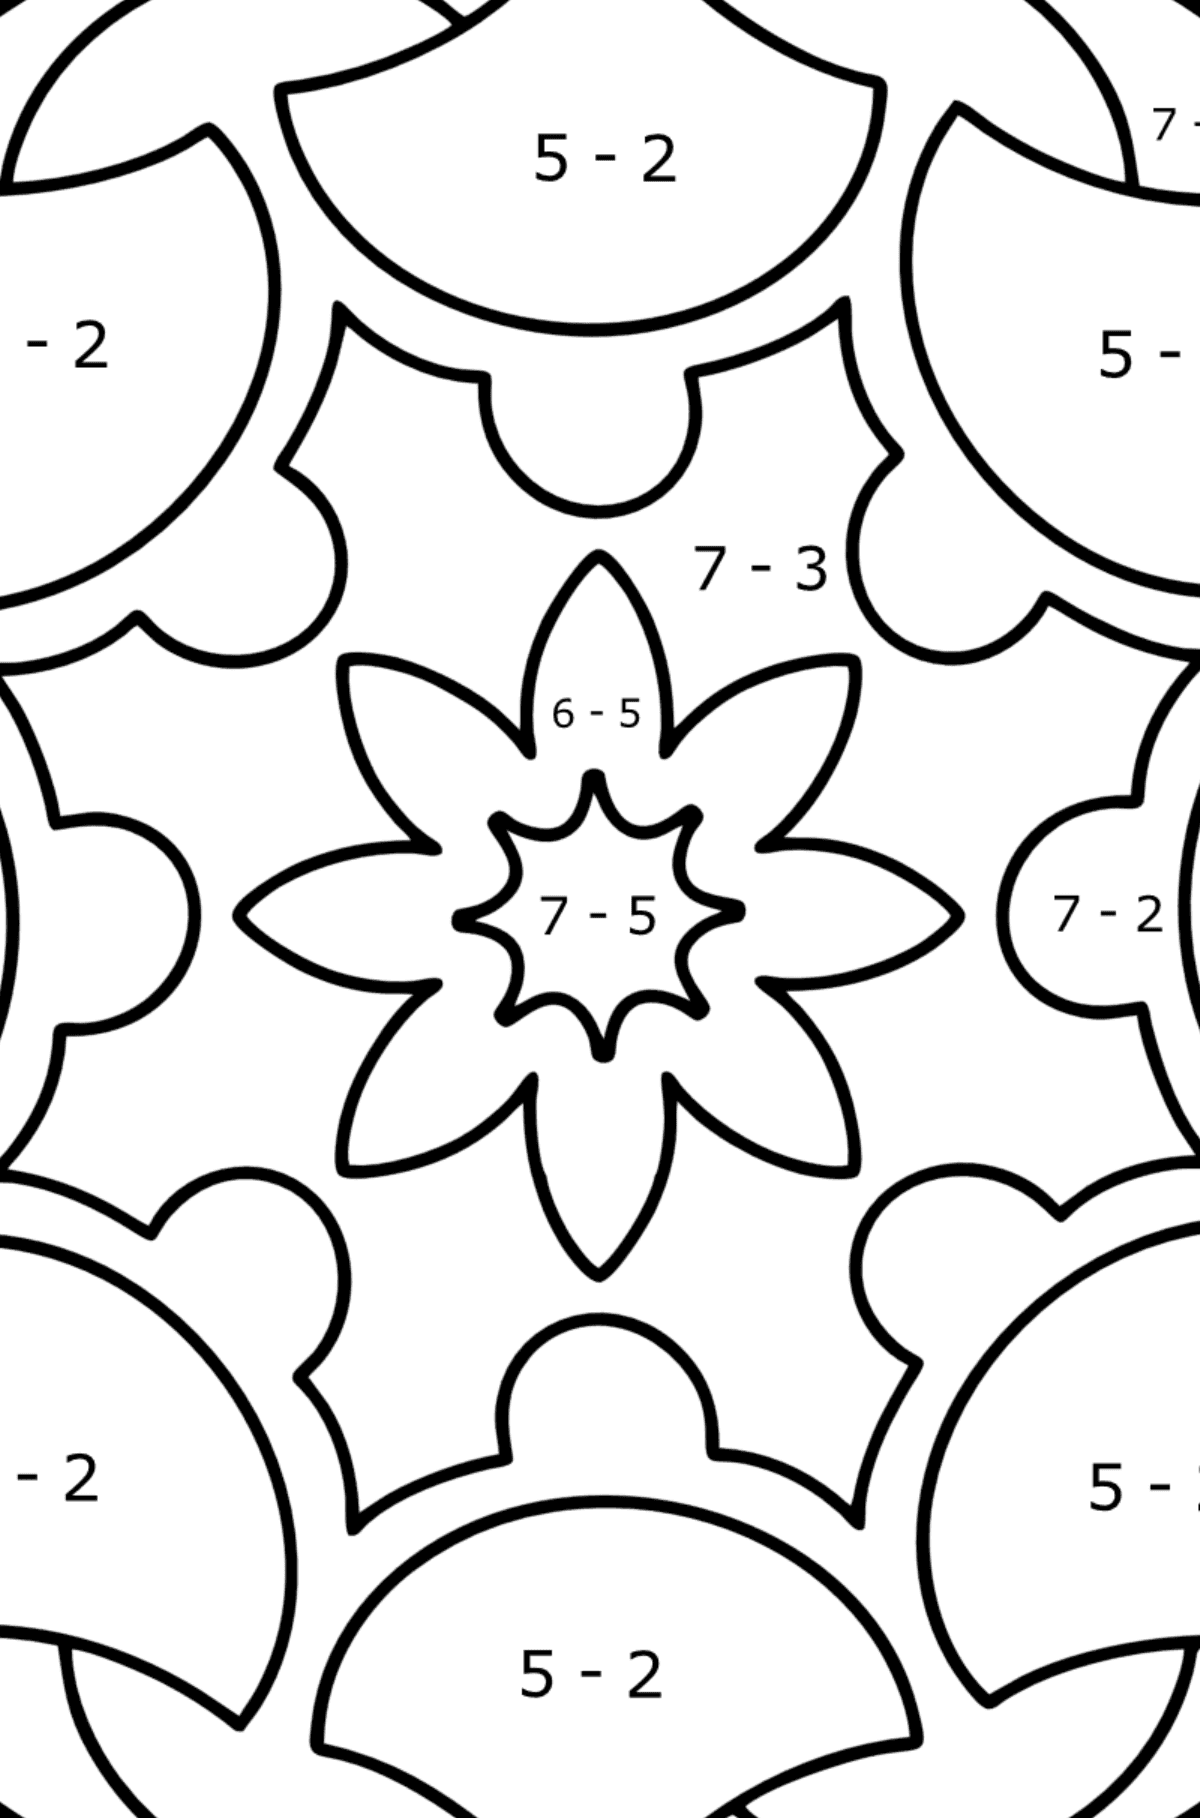 Omalovánka Mandala 7 - Matematická Omalovánka - Odčítání pro děti